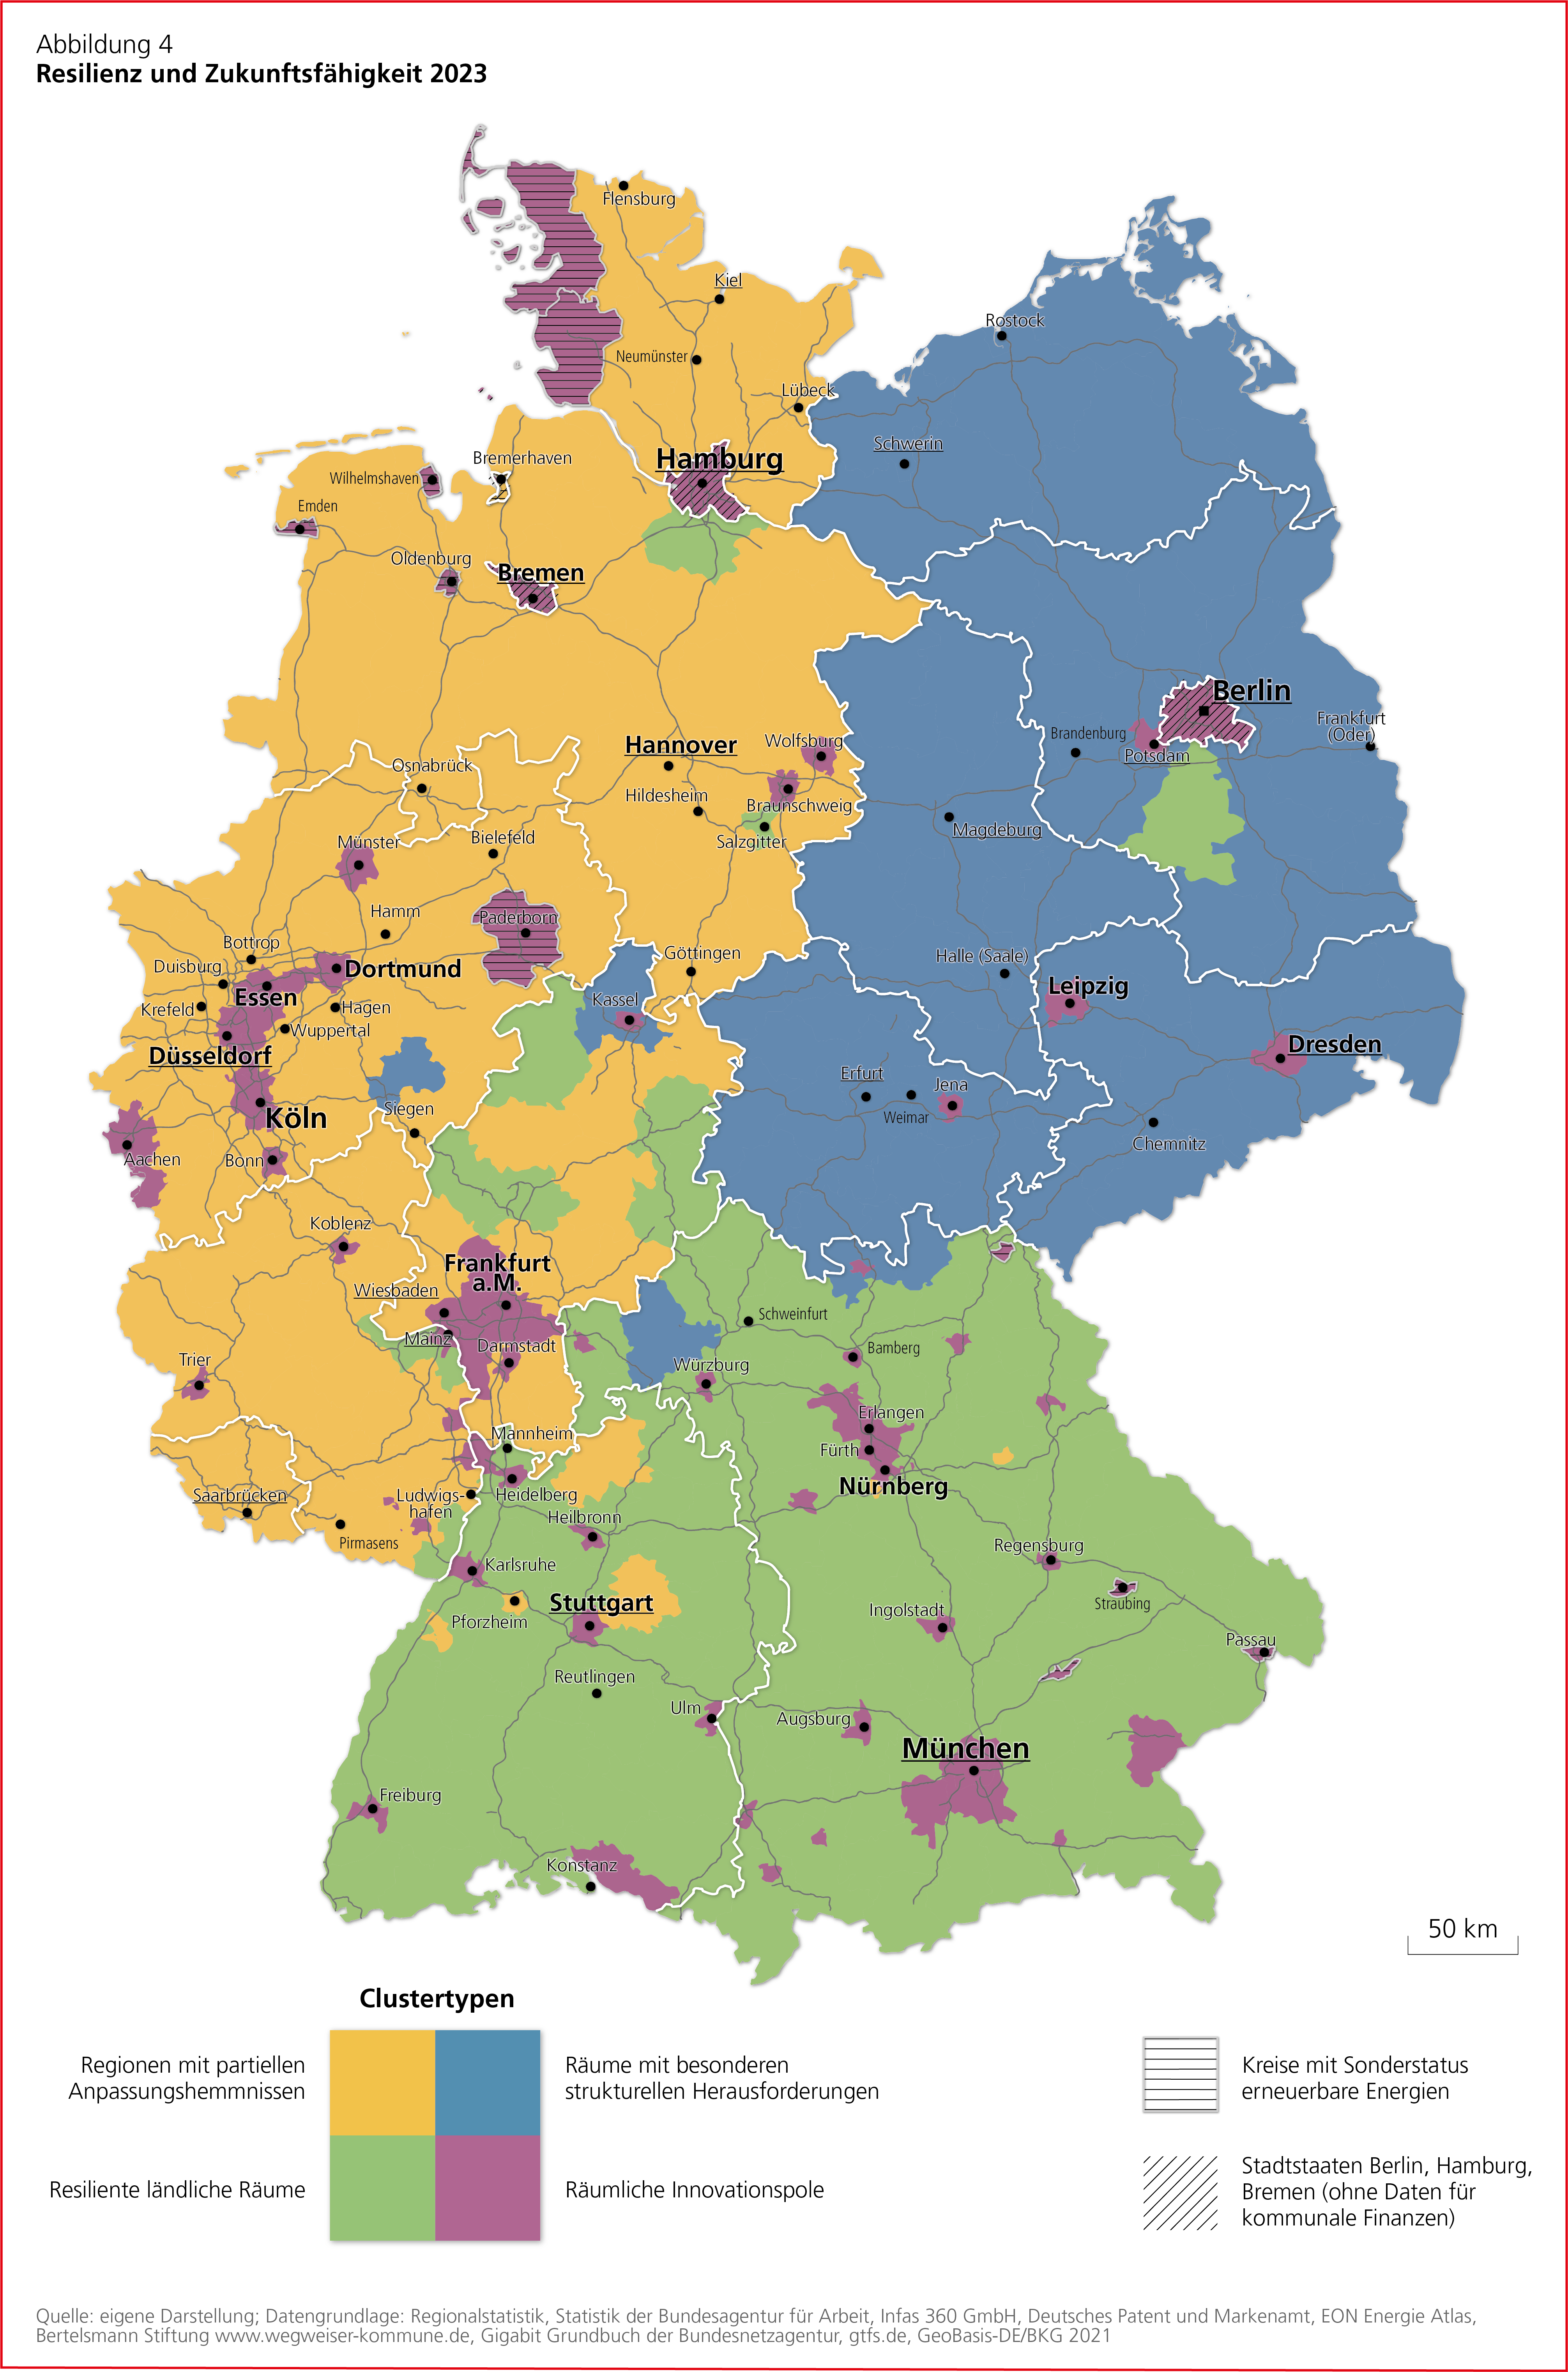 Deutschlandkarte mit den Studienergebnissen mit der Überschrift "Resilienz und Zukunftsfähigkeit 2023"